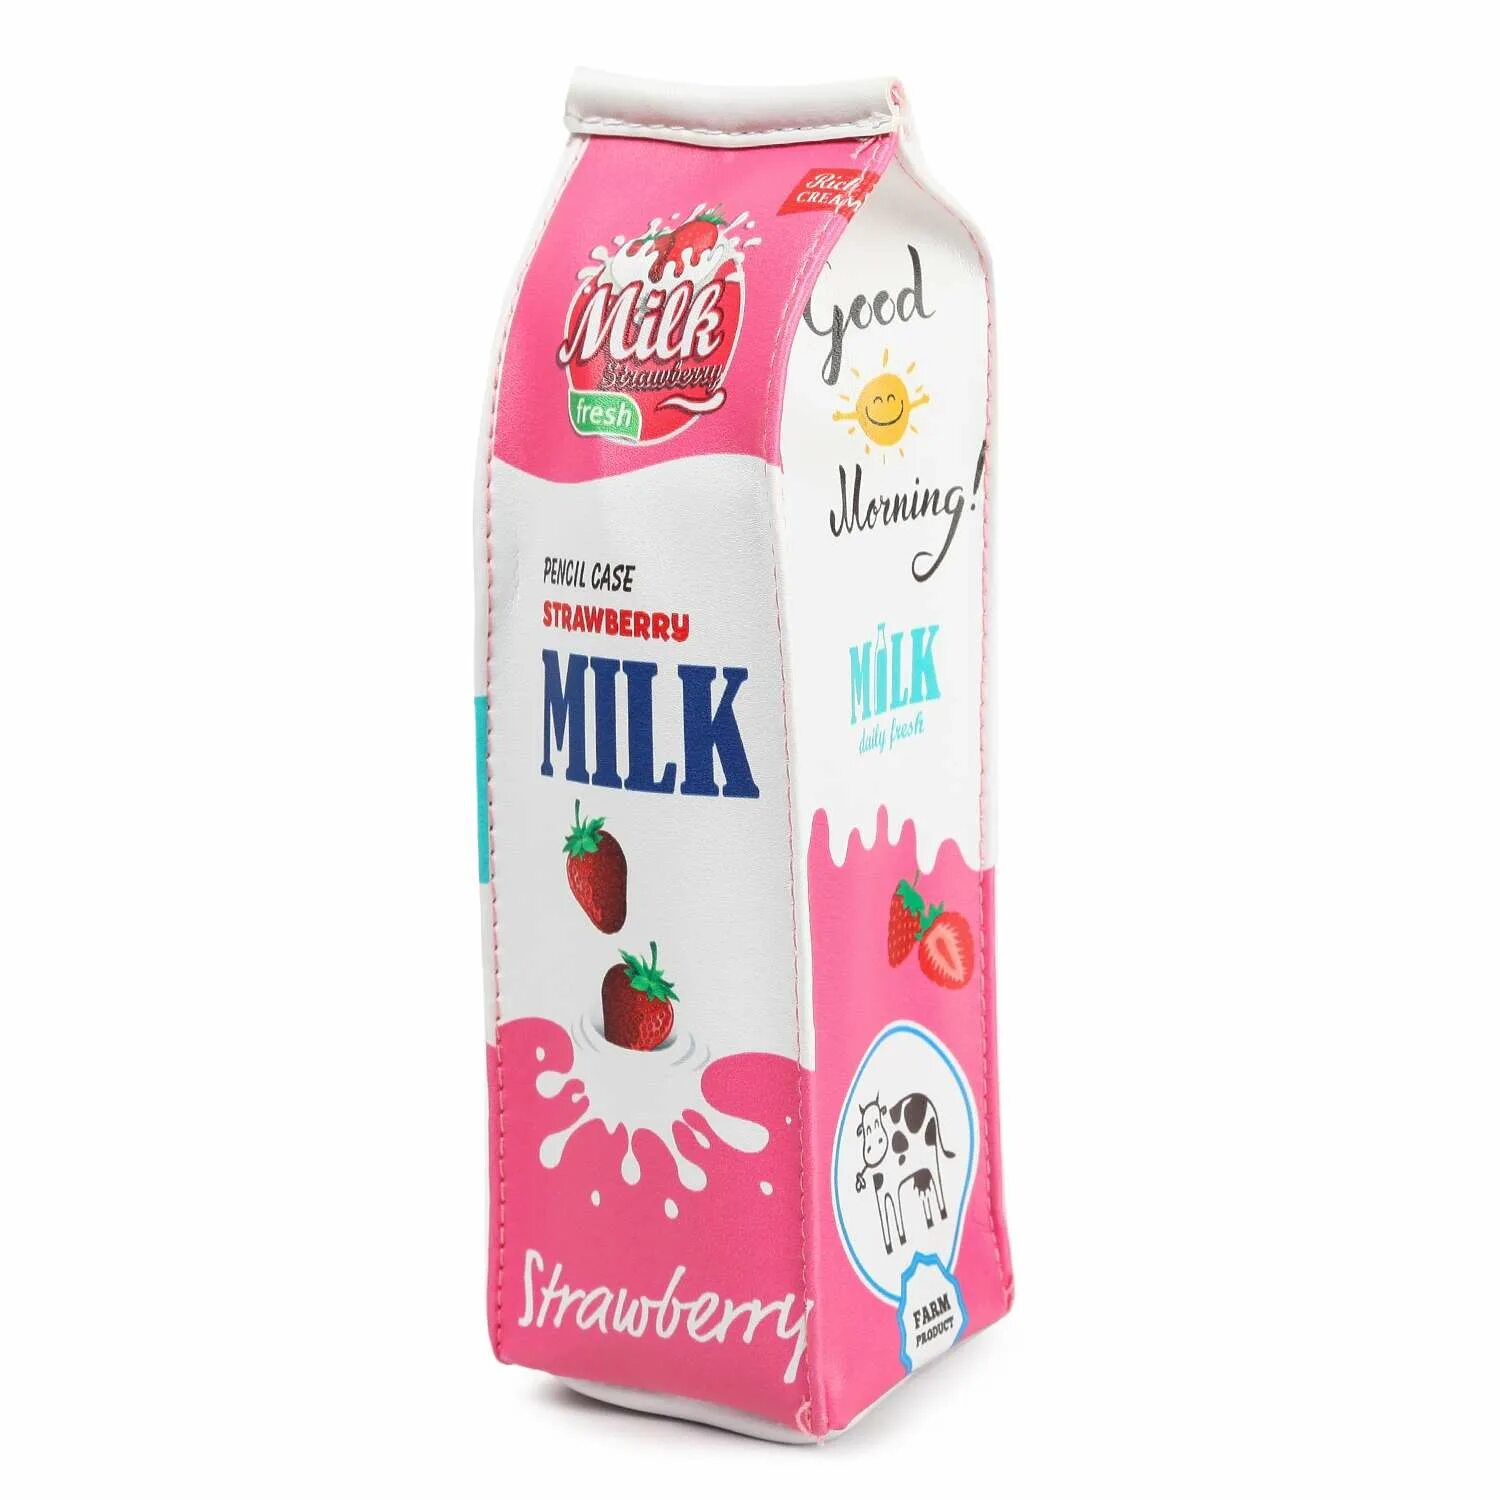 Пенал JOHNSHEN пакет молока. Пенал пакет молока. Молоко в школе. Пенал молоко